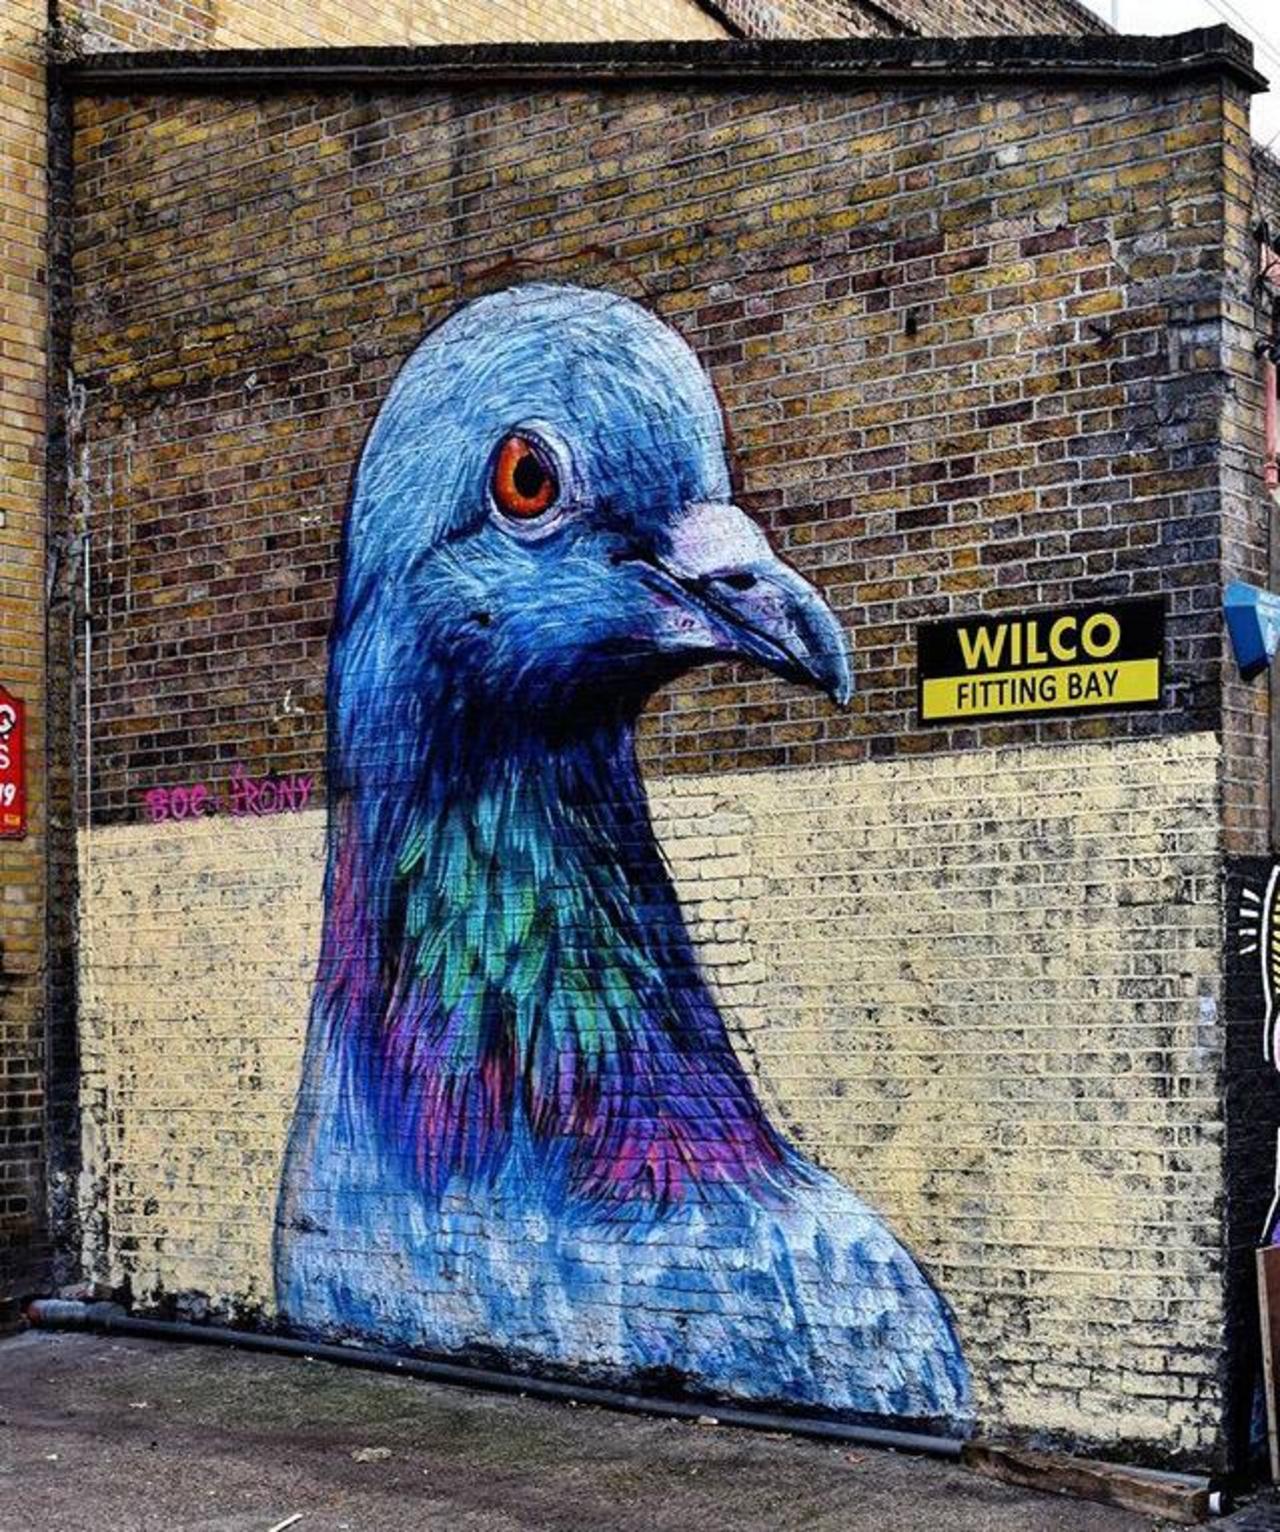 Street Art by Placee Boe & whoamirony in London 

#art #graffiti #mural #streetart http://t.co/1wIeBxu3cQ